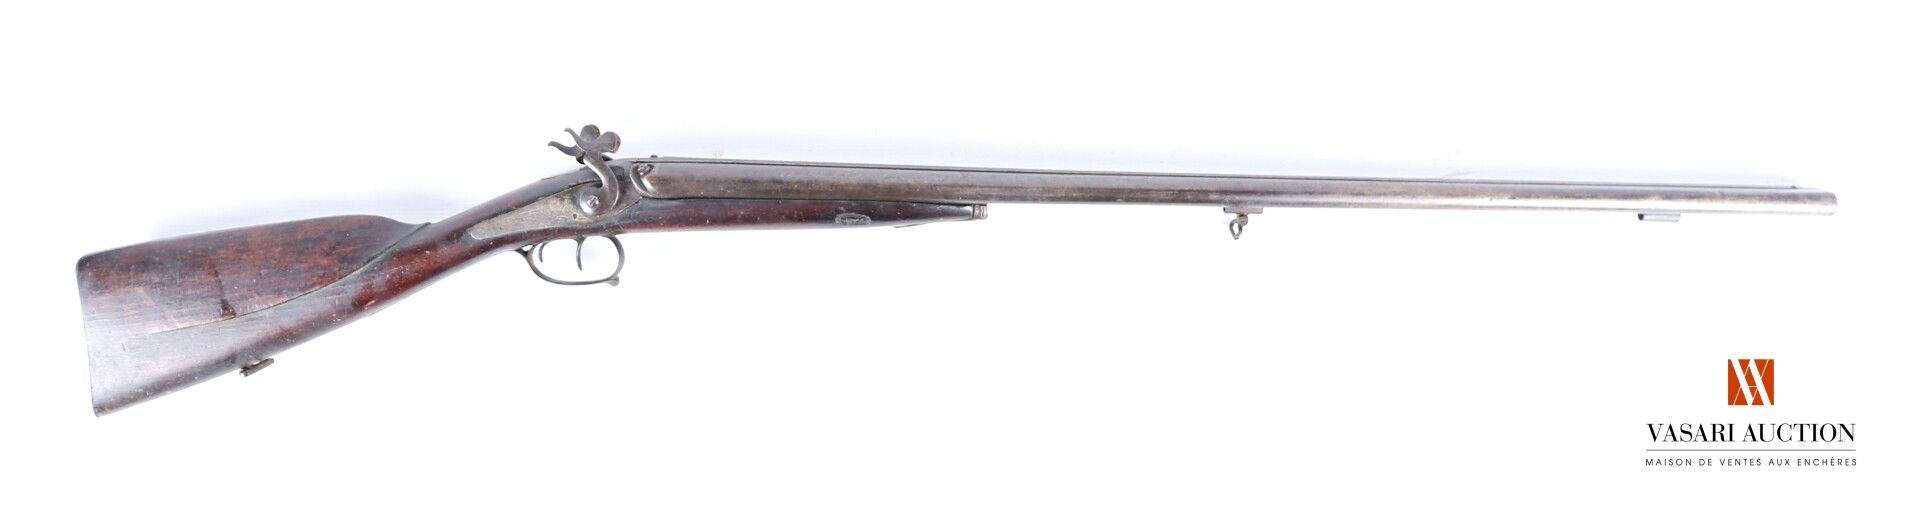 Null 打击式猎枪，82厘米台式枪管，腮帮子和铁层，磨损，氧化，机制有待修改，木材和鞣制有使用痕迹，TL 123厘米

第十九世纪时期

D类